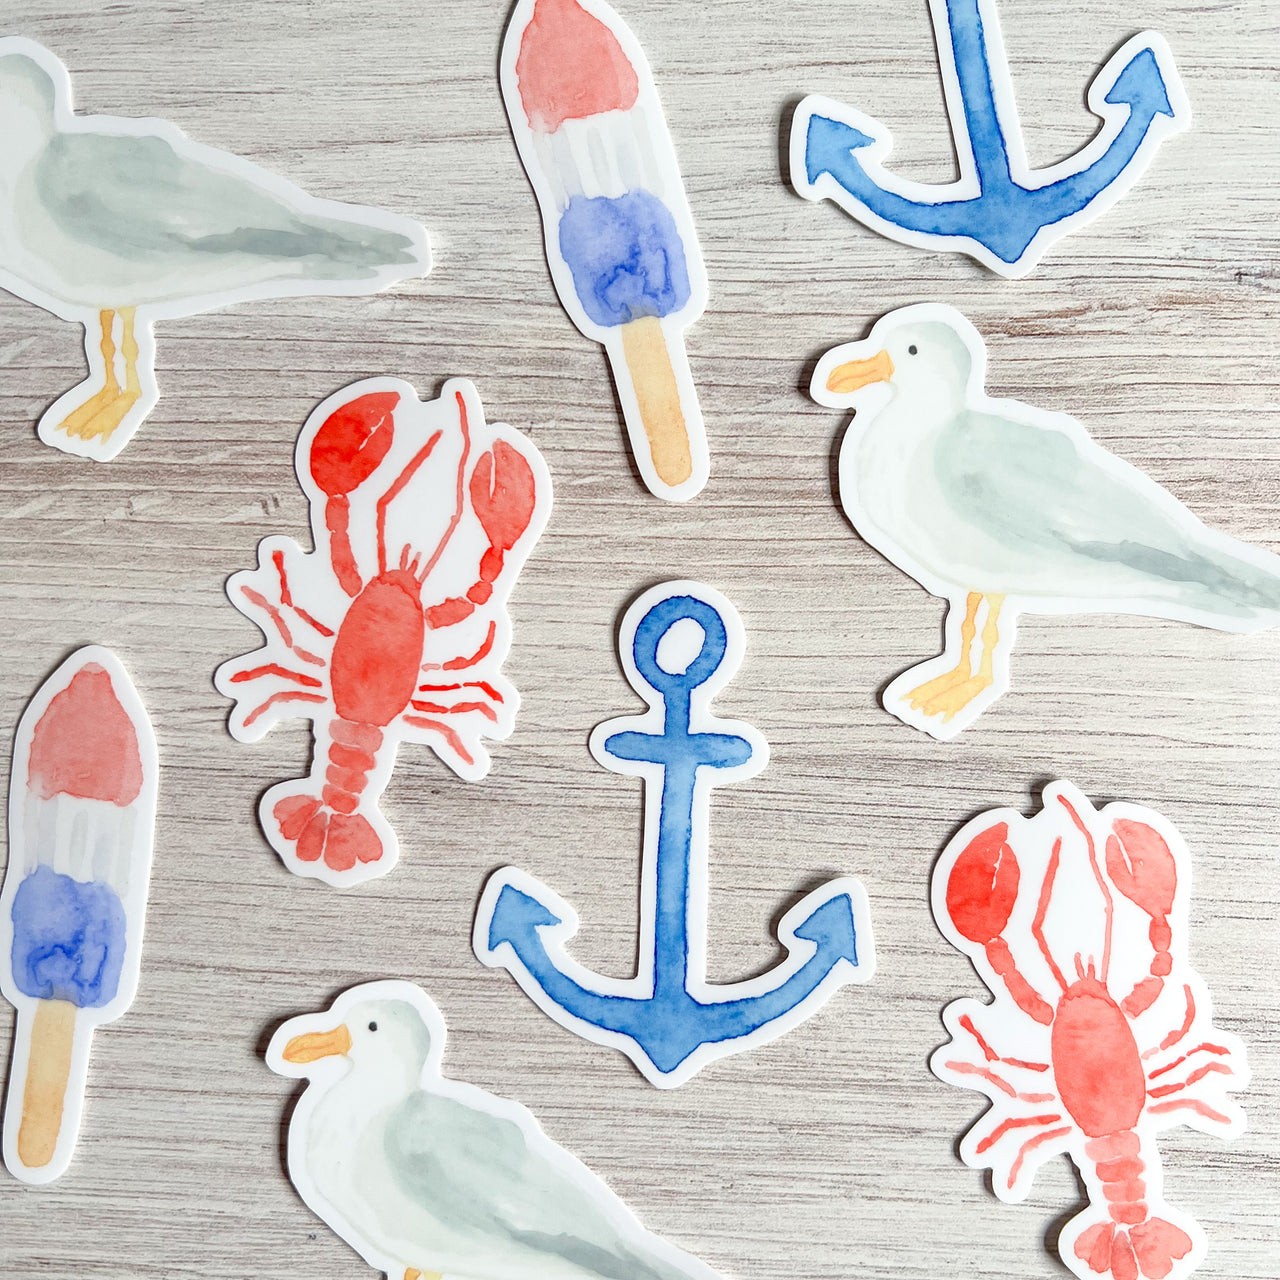 Seaside Stickers by Gert & Co